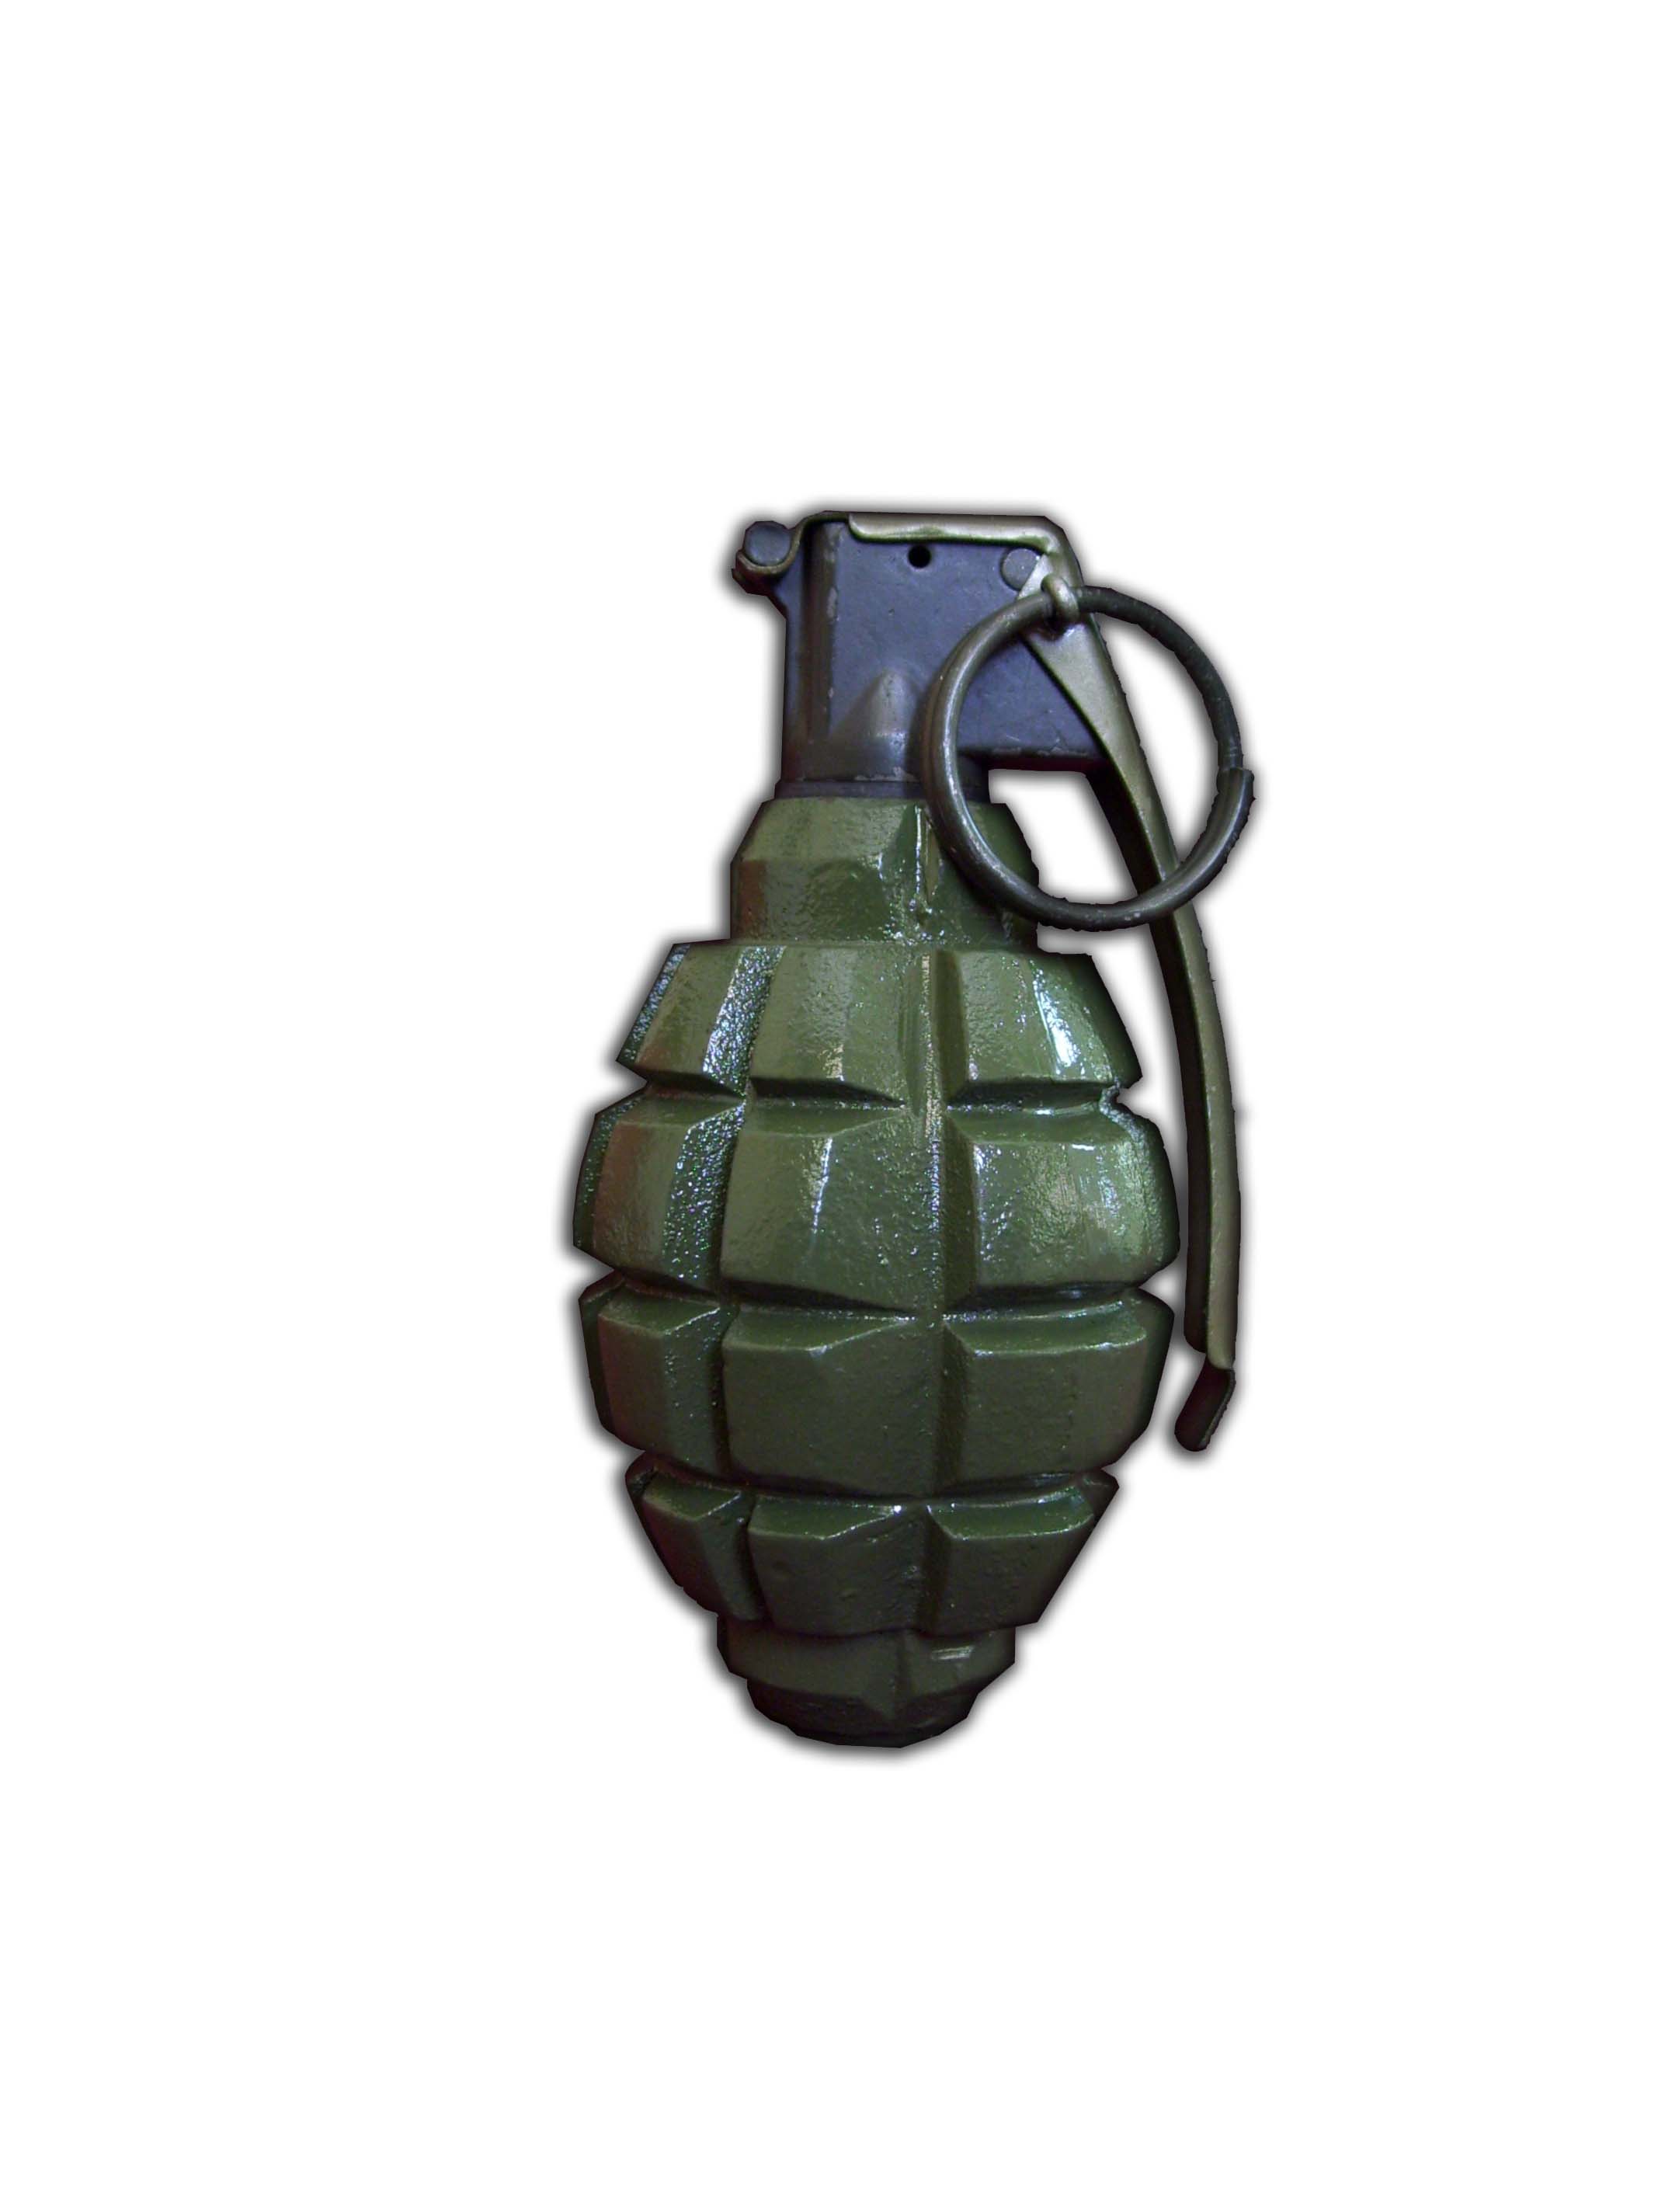 Grenade #5